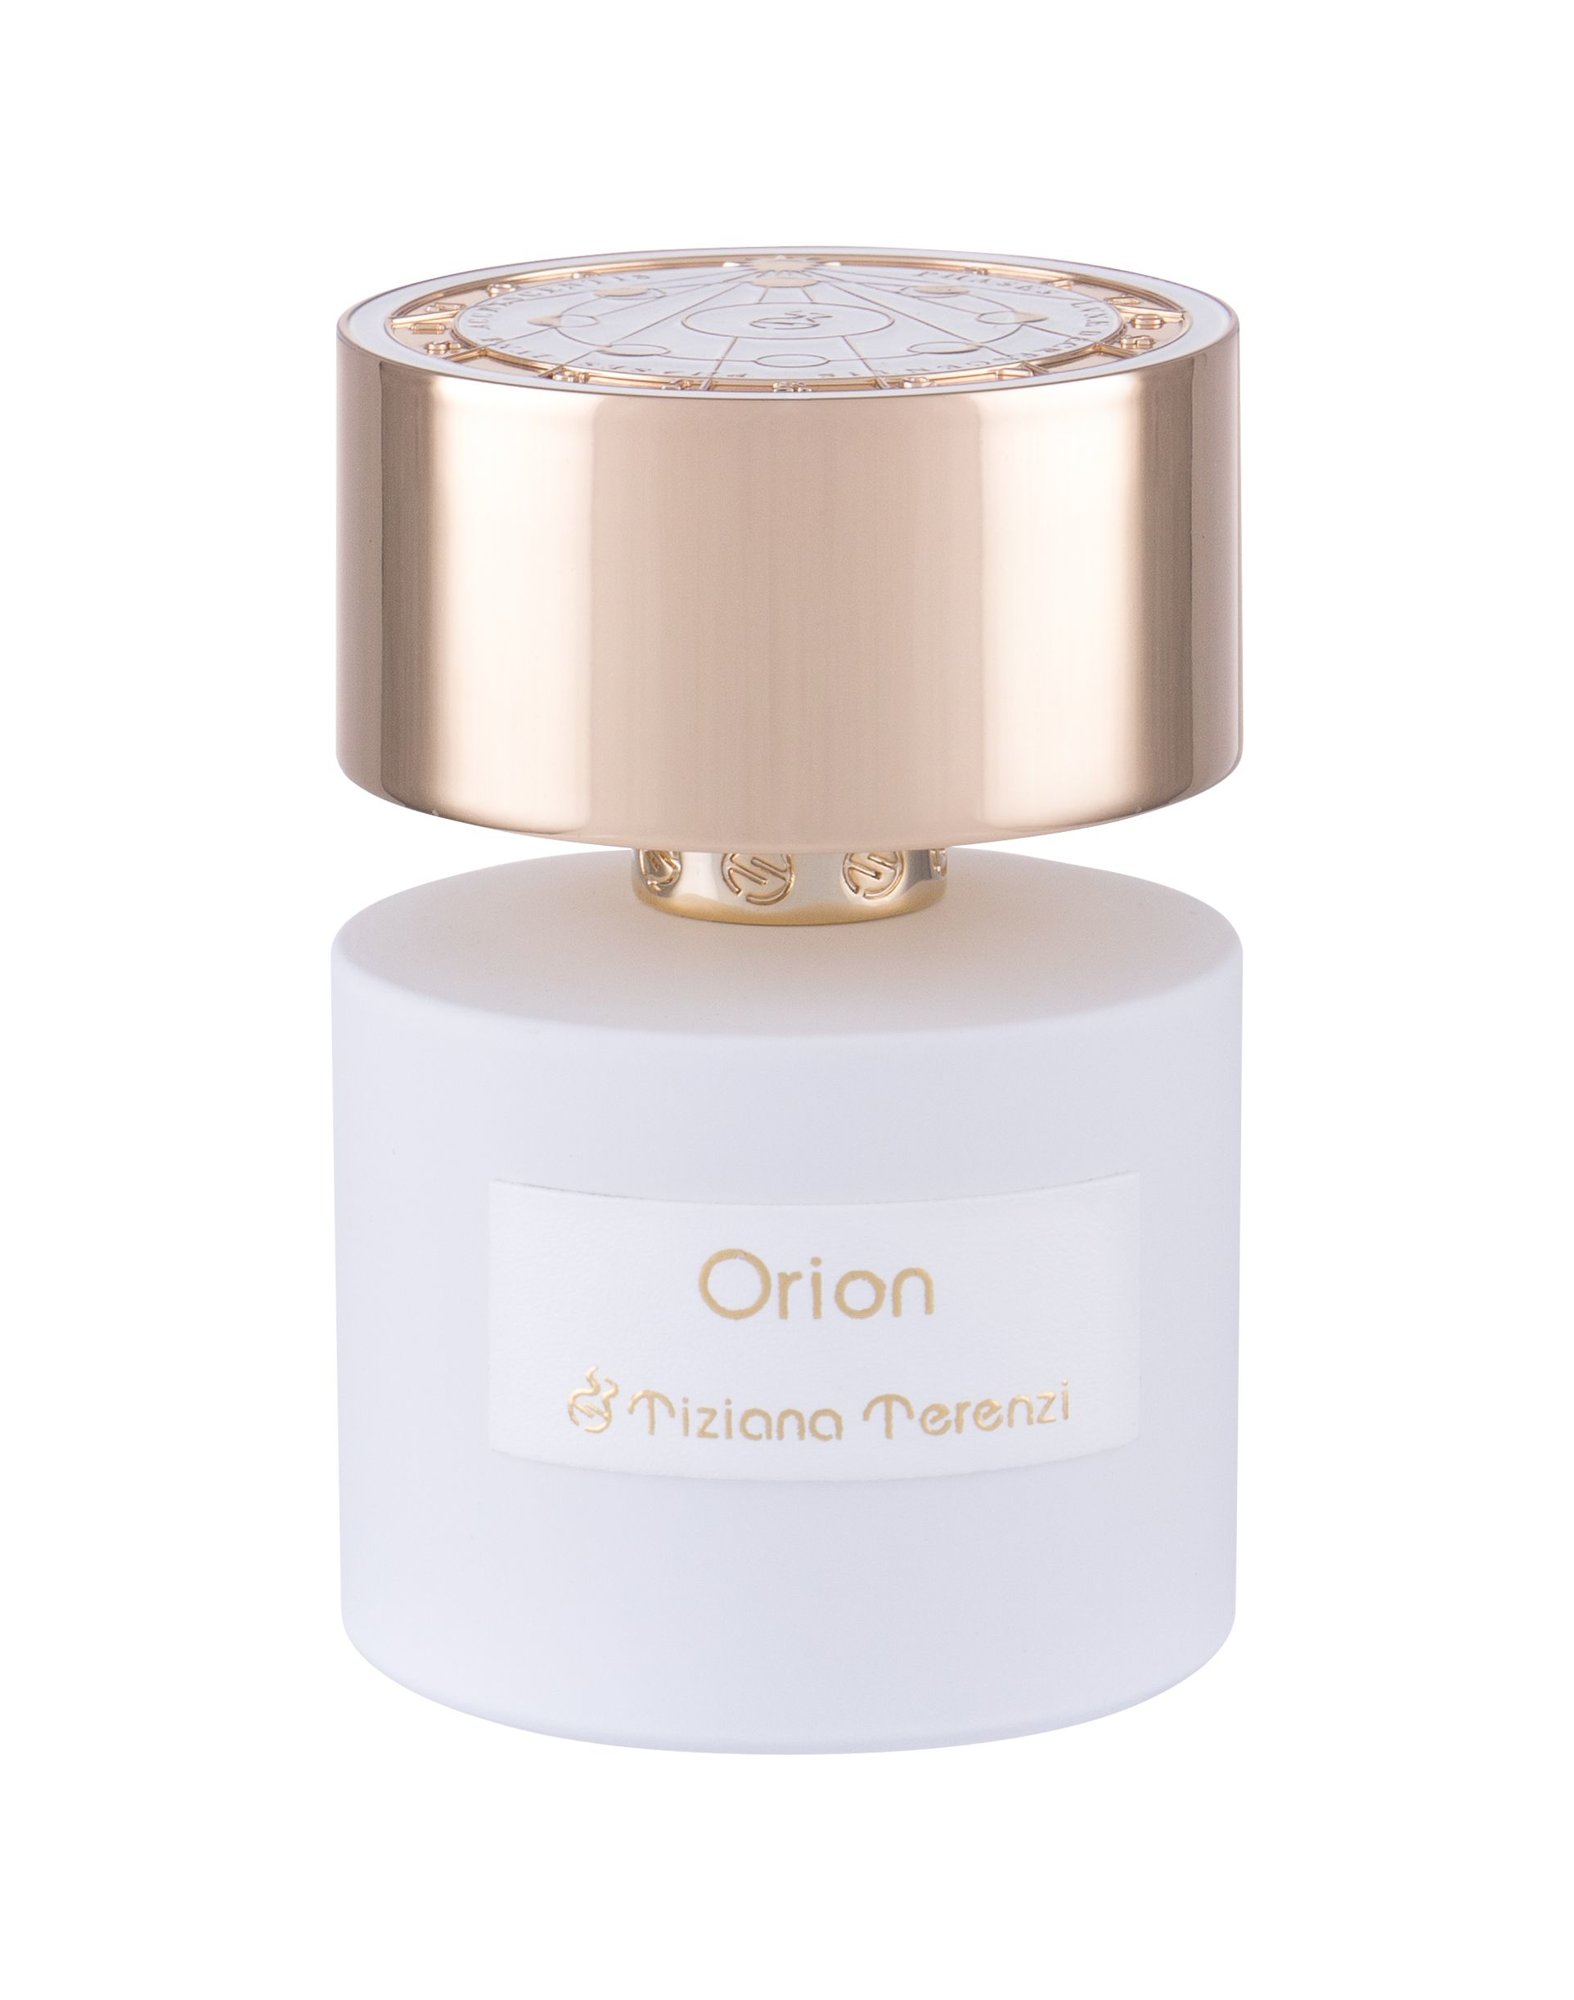 Tiziana Terenzi Orion 20 ml NIŠINIAI kvepalų mėginukas (atomaizeris) Unisex Parfum